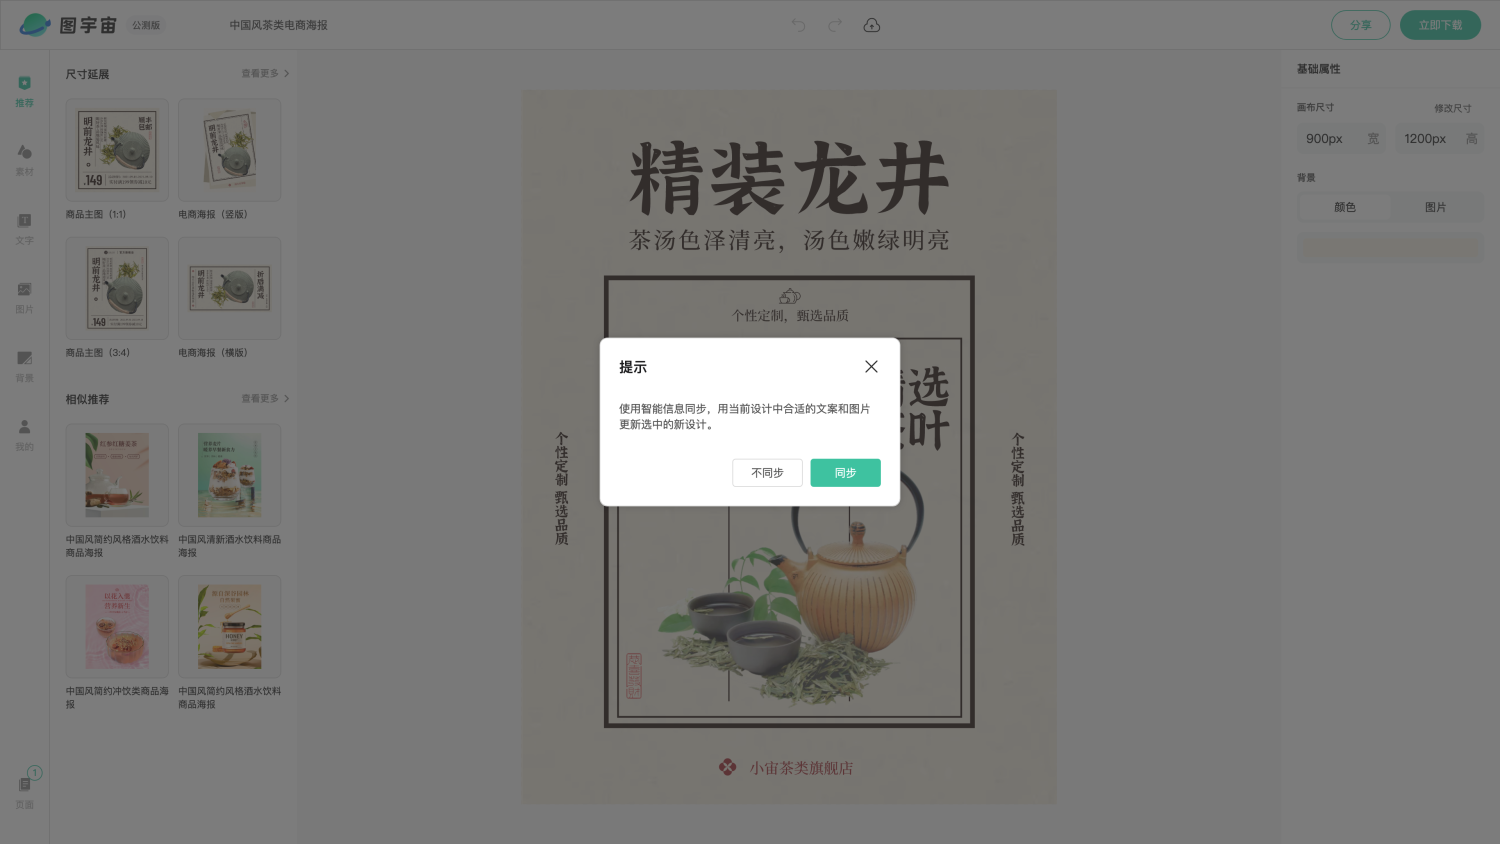 图宇宙-编辑器-中国风茶类电商海报